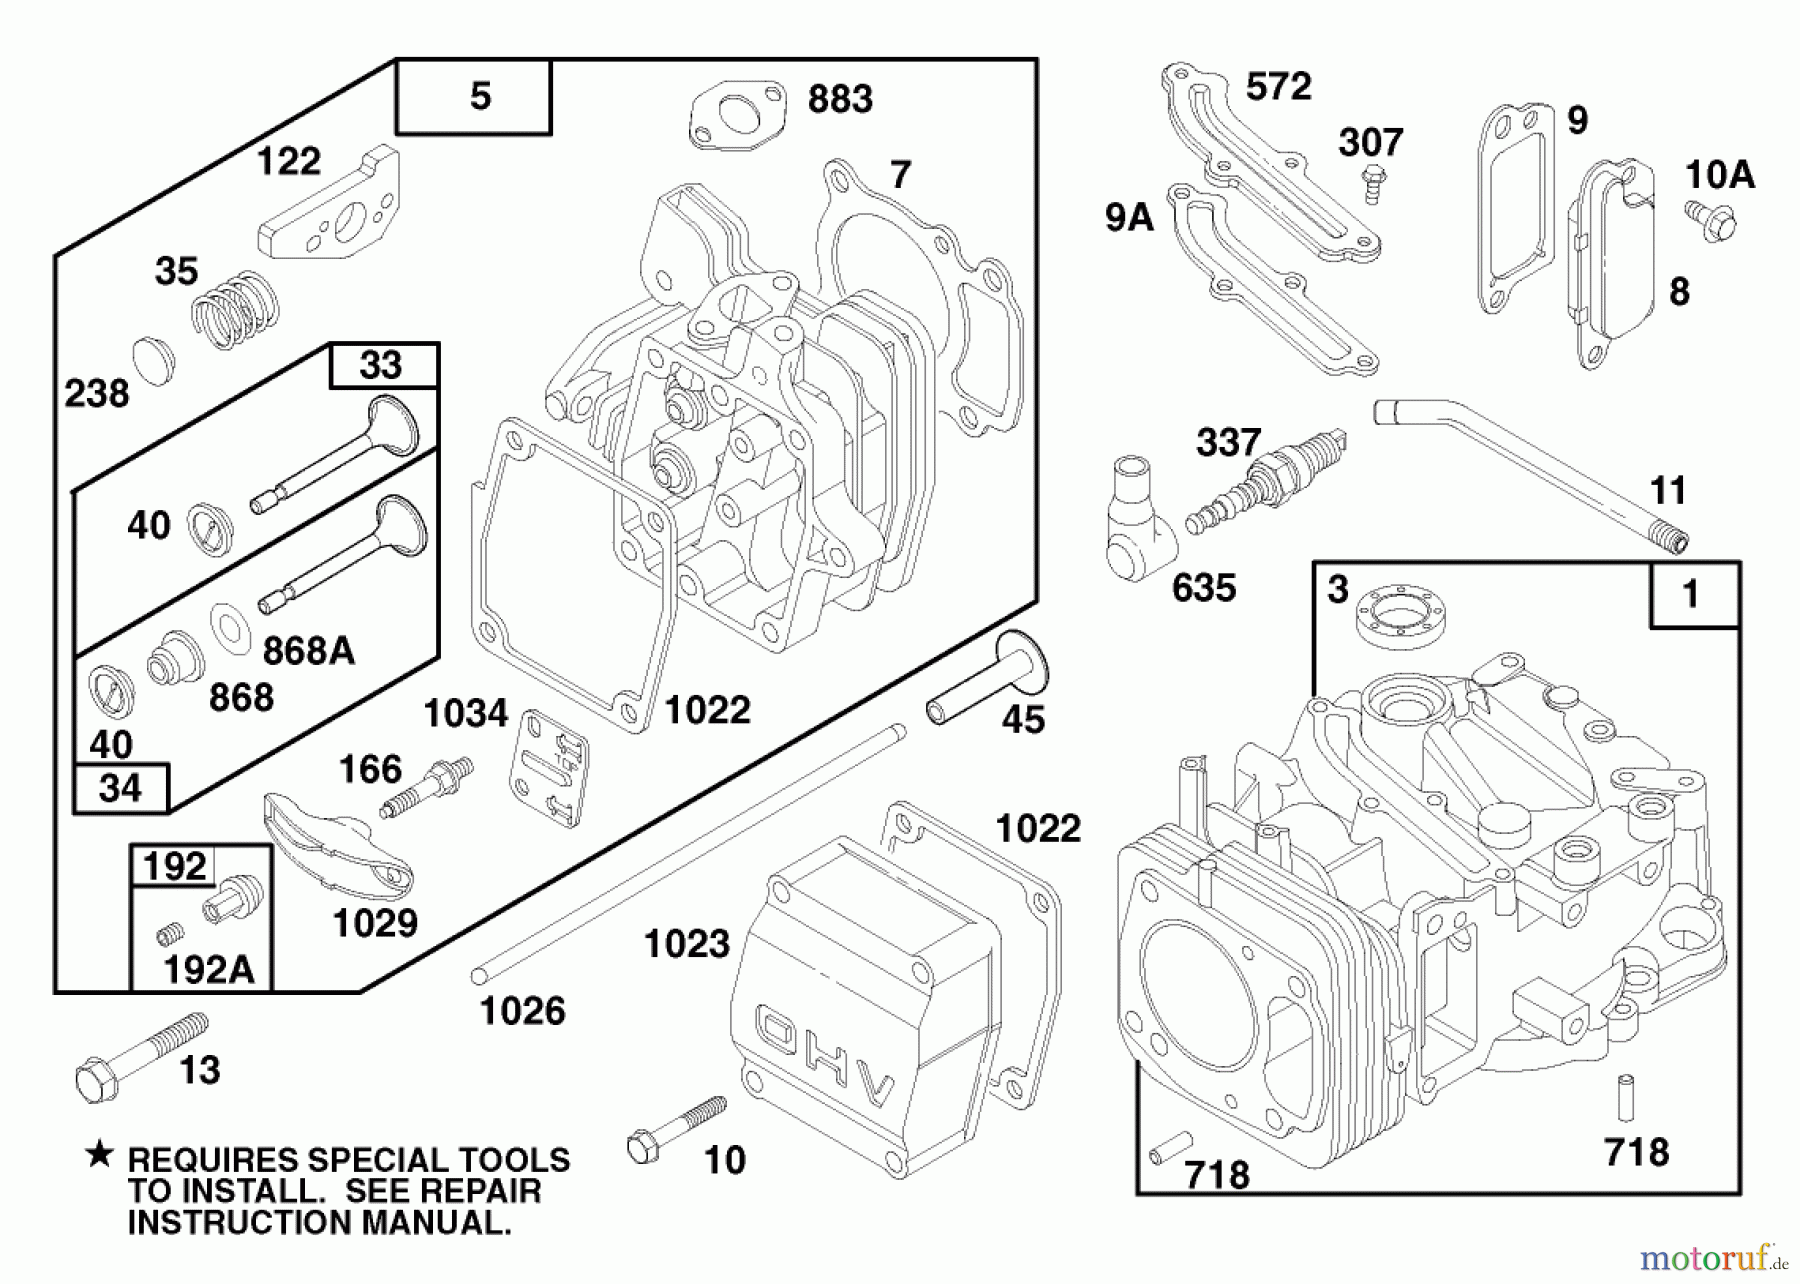  Toro Neu Mowers, Walk-Behind Seite 1 20476 - Toro Lawnmower, 1996 (6900001-6999999) ENGINE GTS 150 (MODEL NO. 20475 ONLY) #1